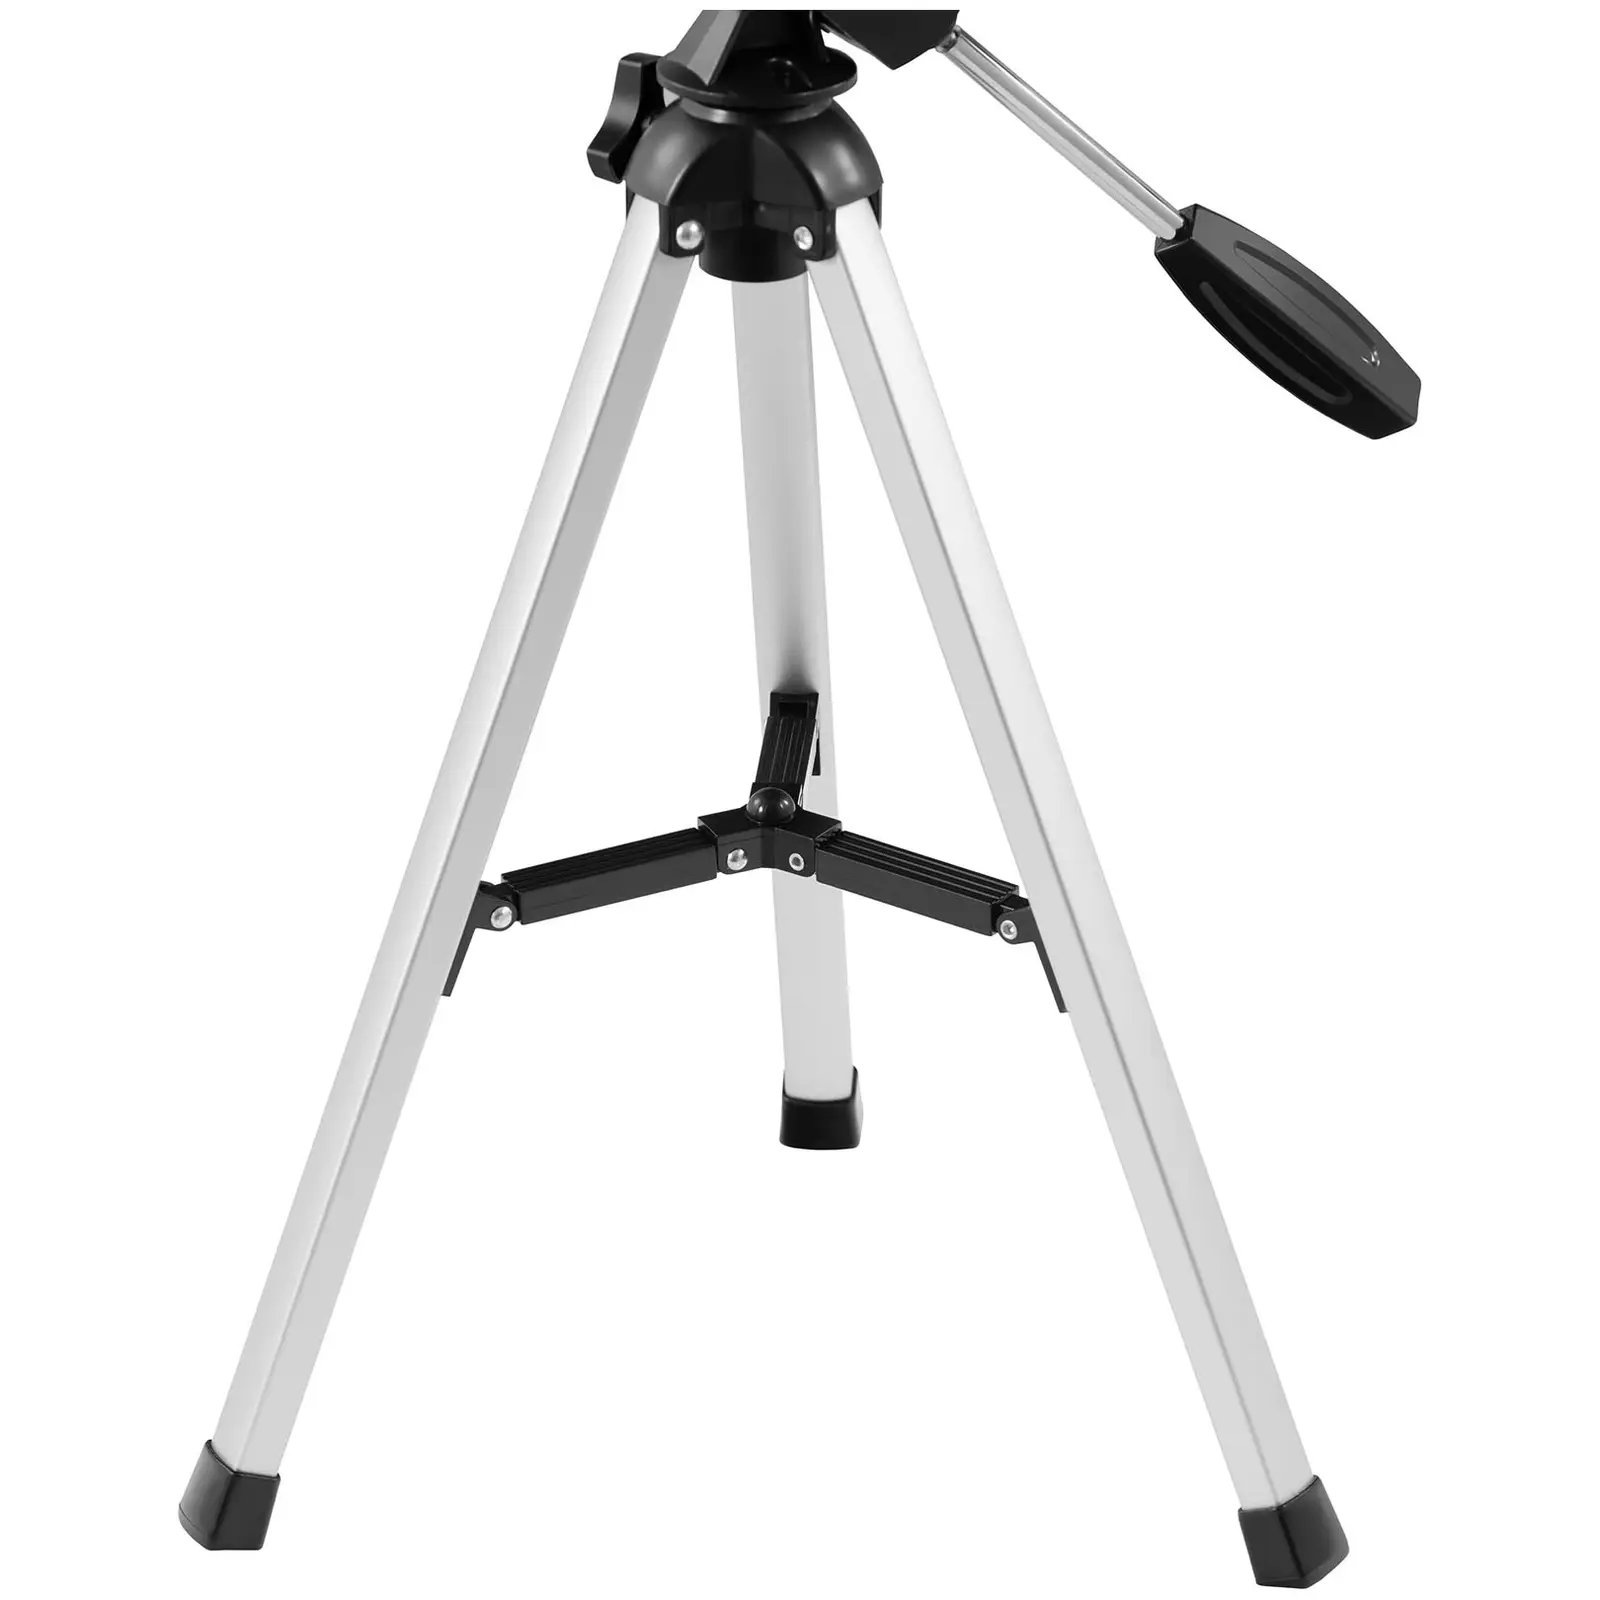 Teleskop - Ø 69,78 mm - 360 mm - Tripod-Stativ